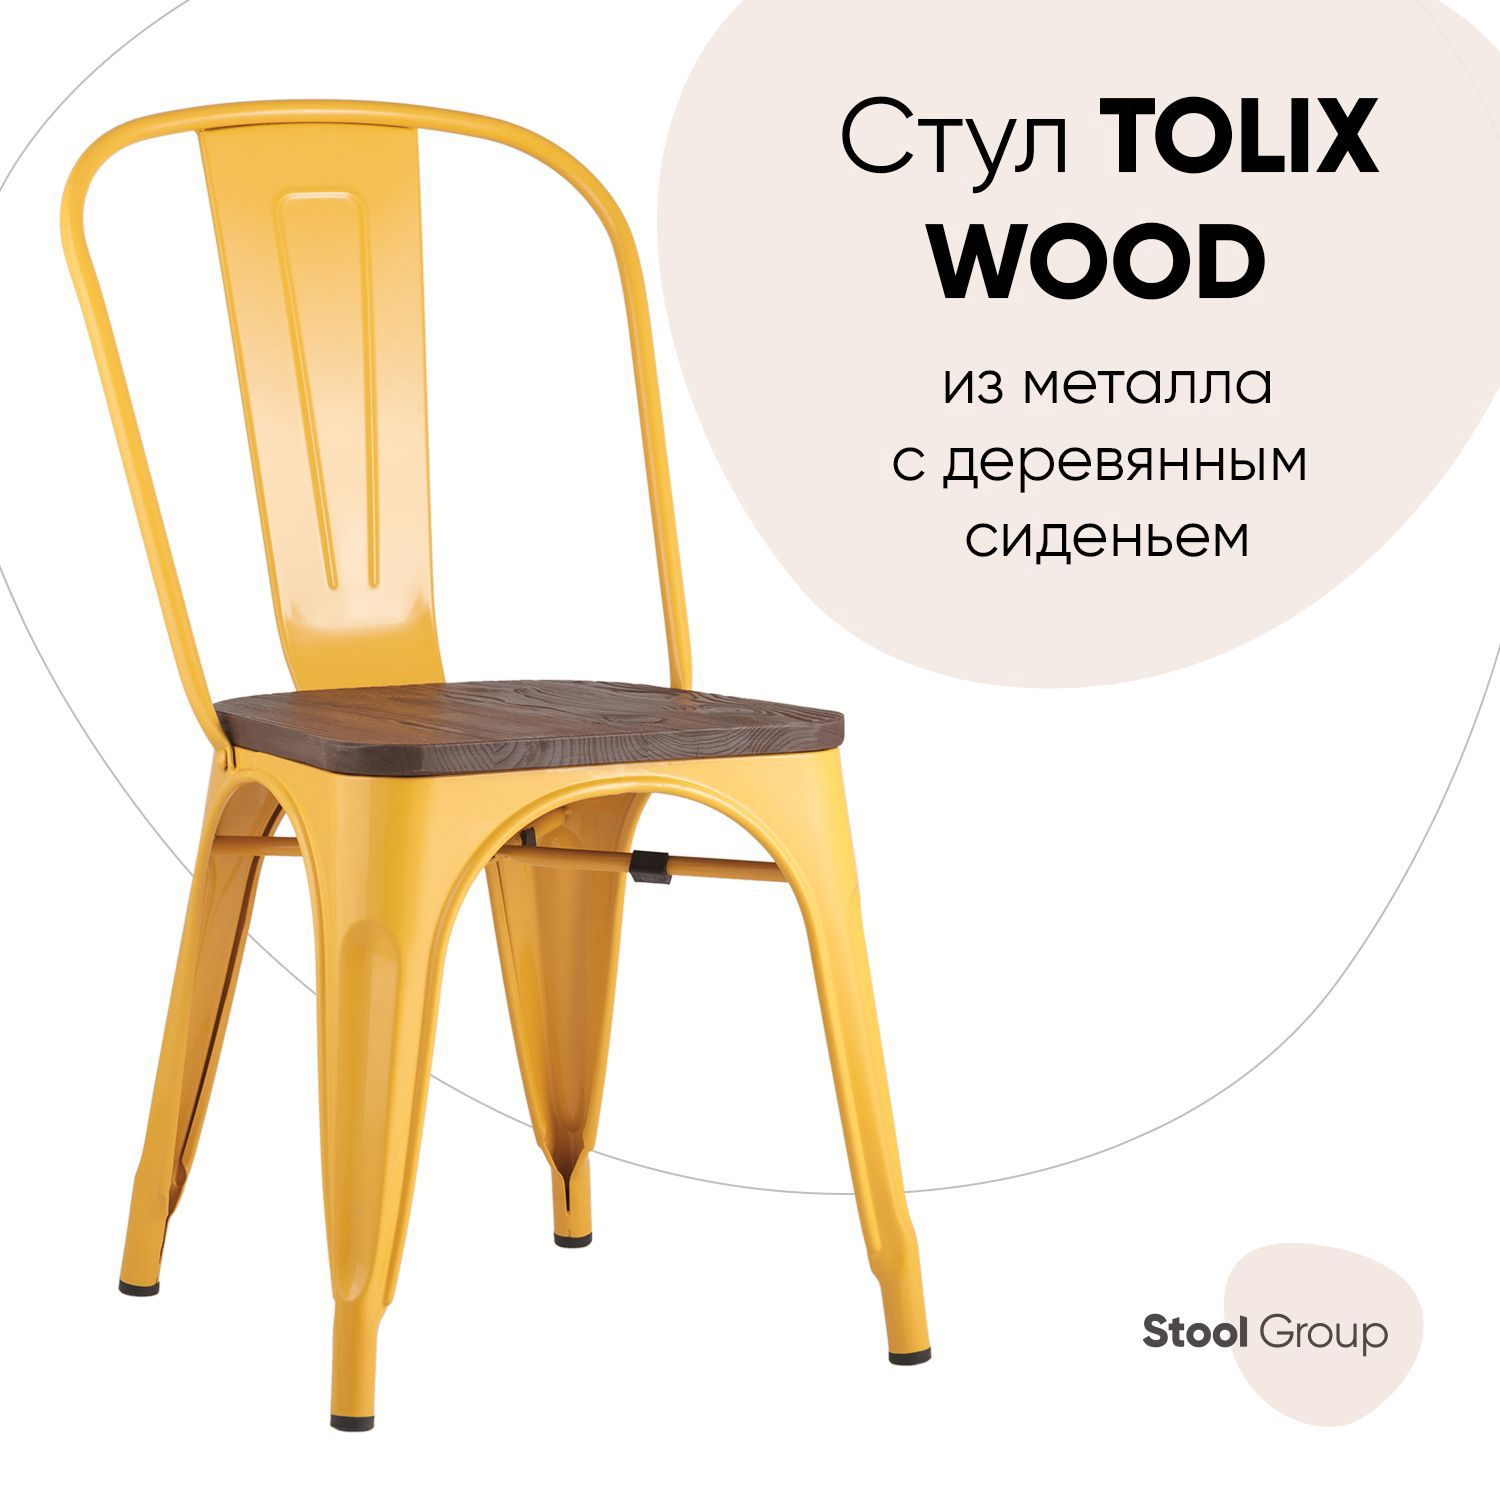 90490899 Стул кухонный Wood 84х51х45 см дерево цвет желтый Tolix STLM-0249795 СТУЛ ГРУП